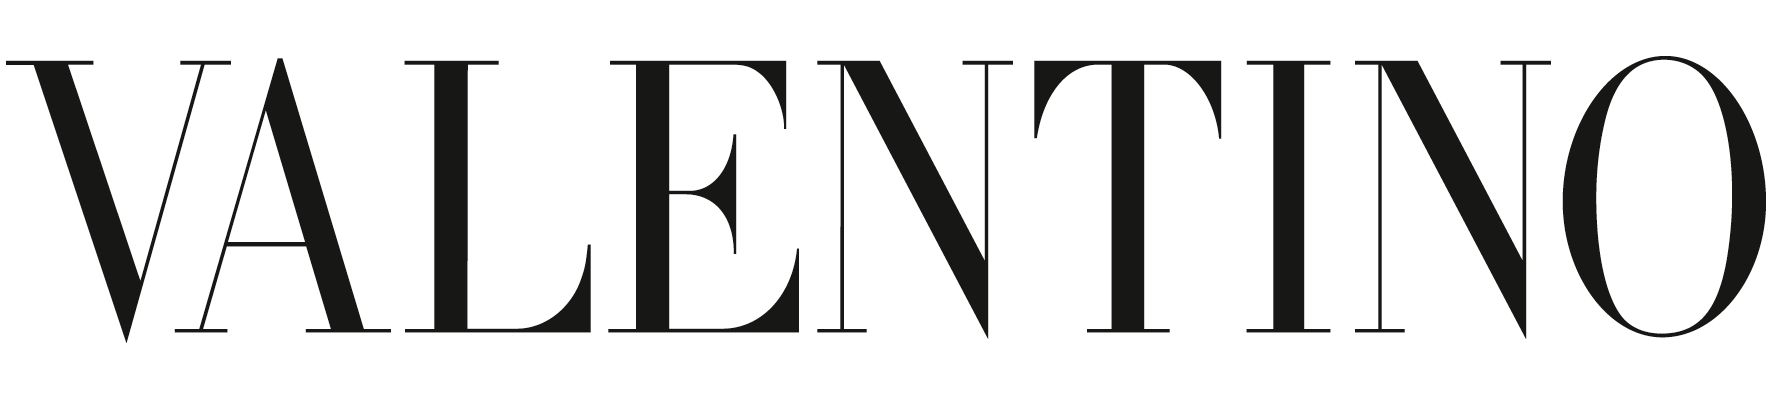 Valentino Logo